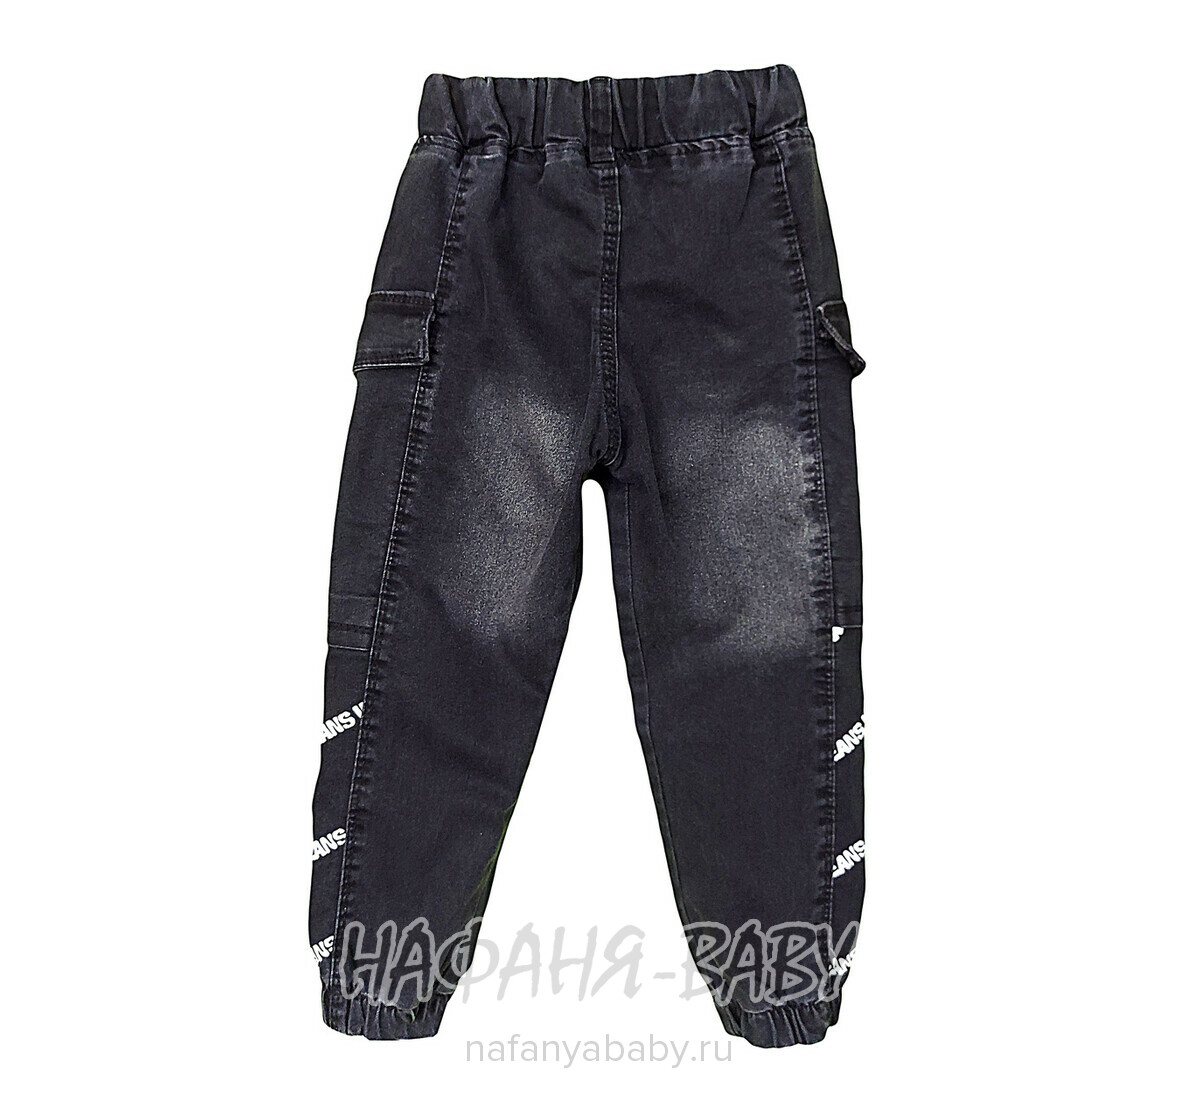 Детские джинсы YAVRUCAK арт: 4250 для мальчика от 3 до 6 лет, цвет черный, оптом Турция